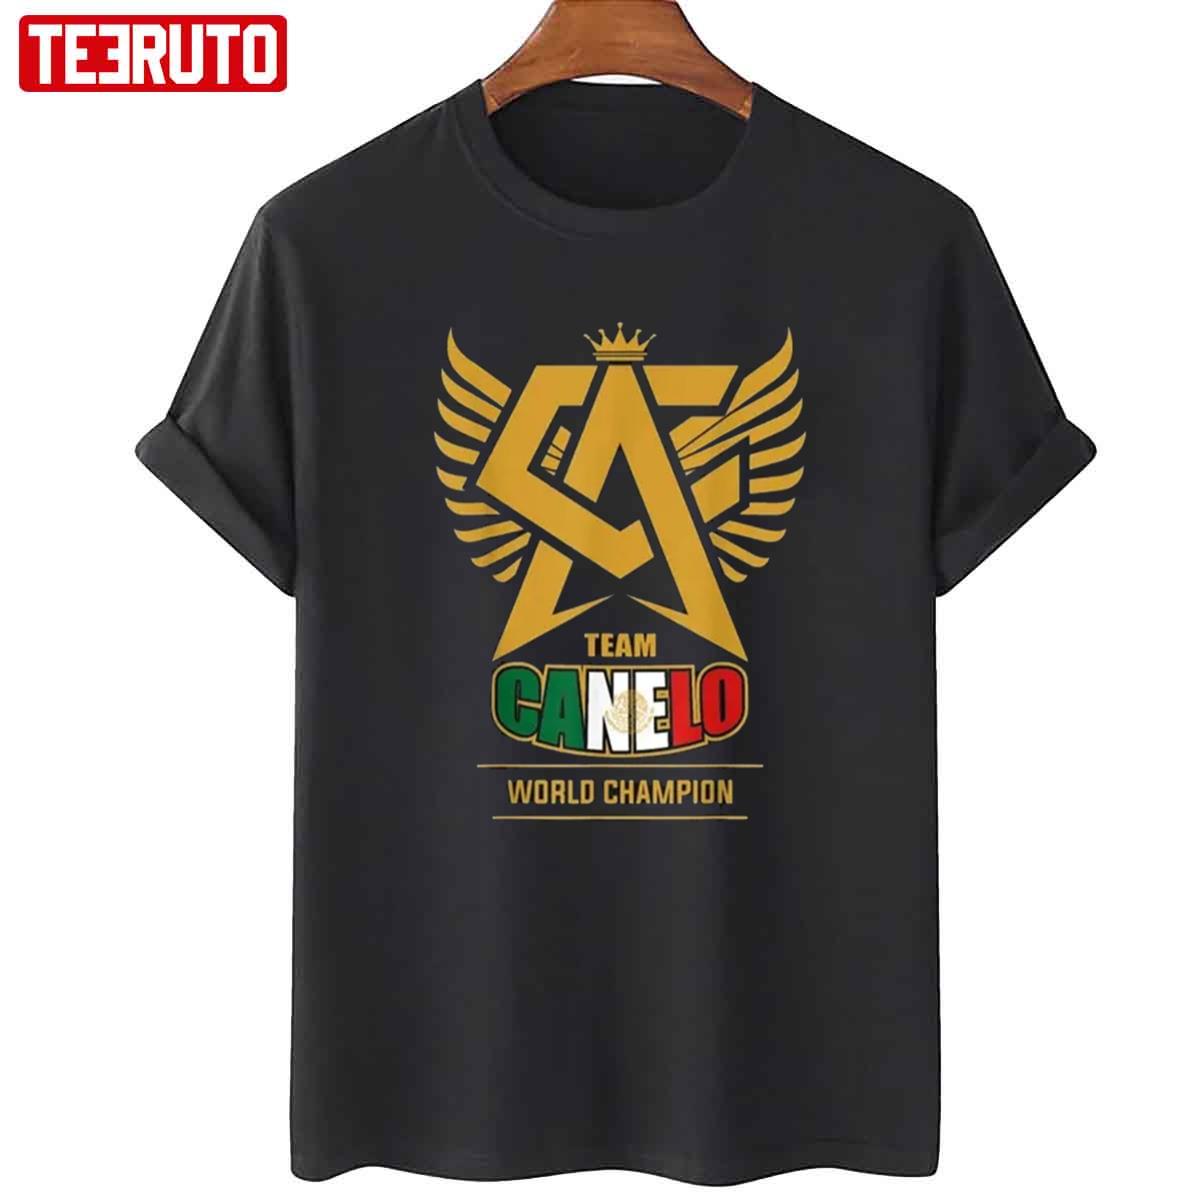 Team Canelo World Champion Unisex T-Shirt